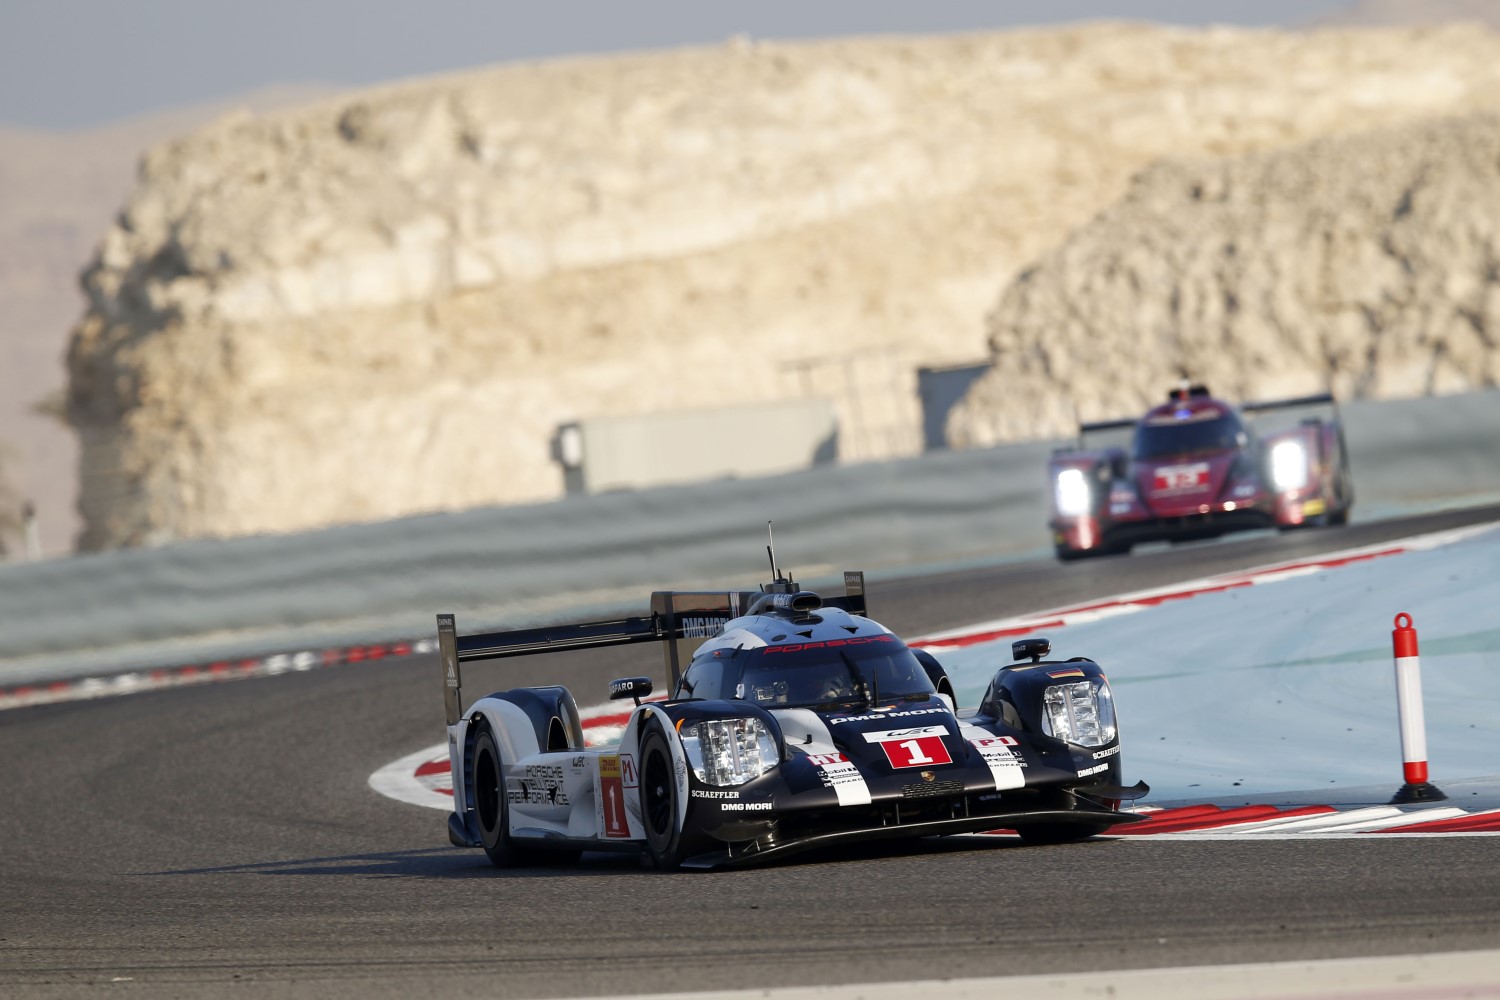 Porsche won the title last year in Bahrain